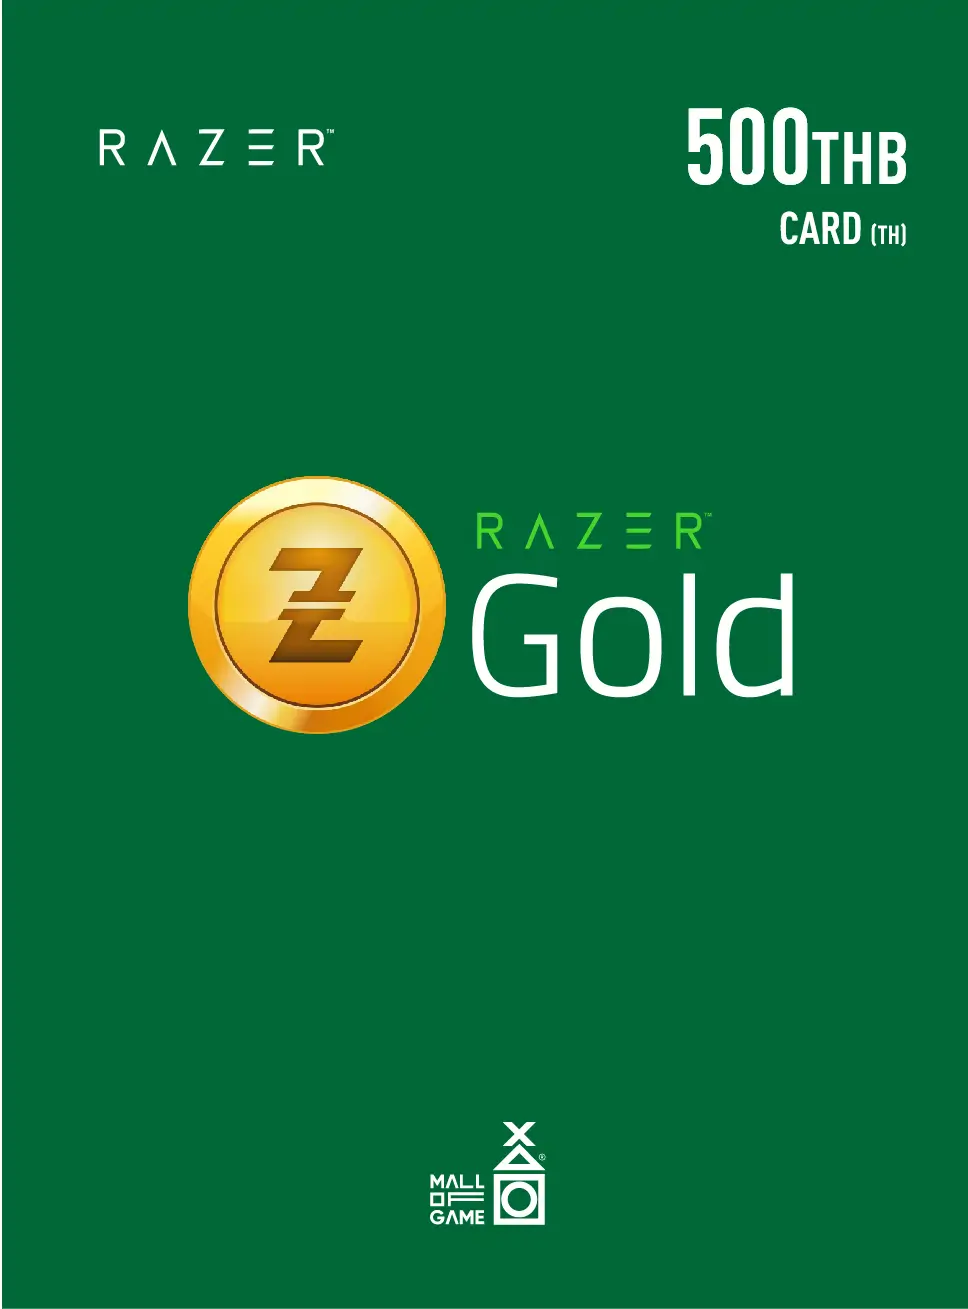 Razer Gold THB500 (TH)